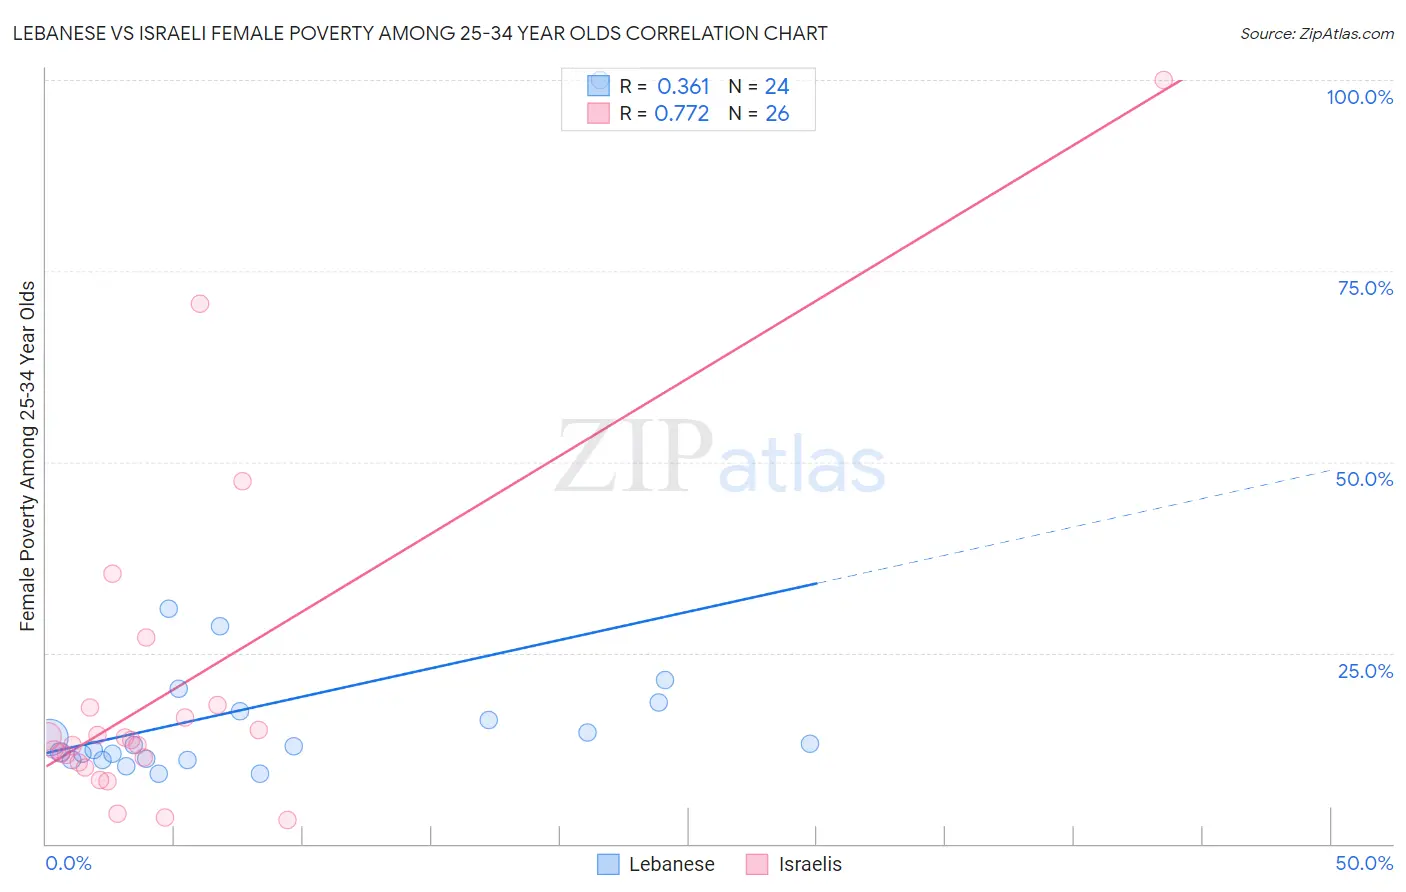 Lebanese vs Israeli Female Poverty Among 25-34 Year Olds